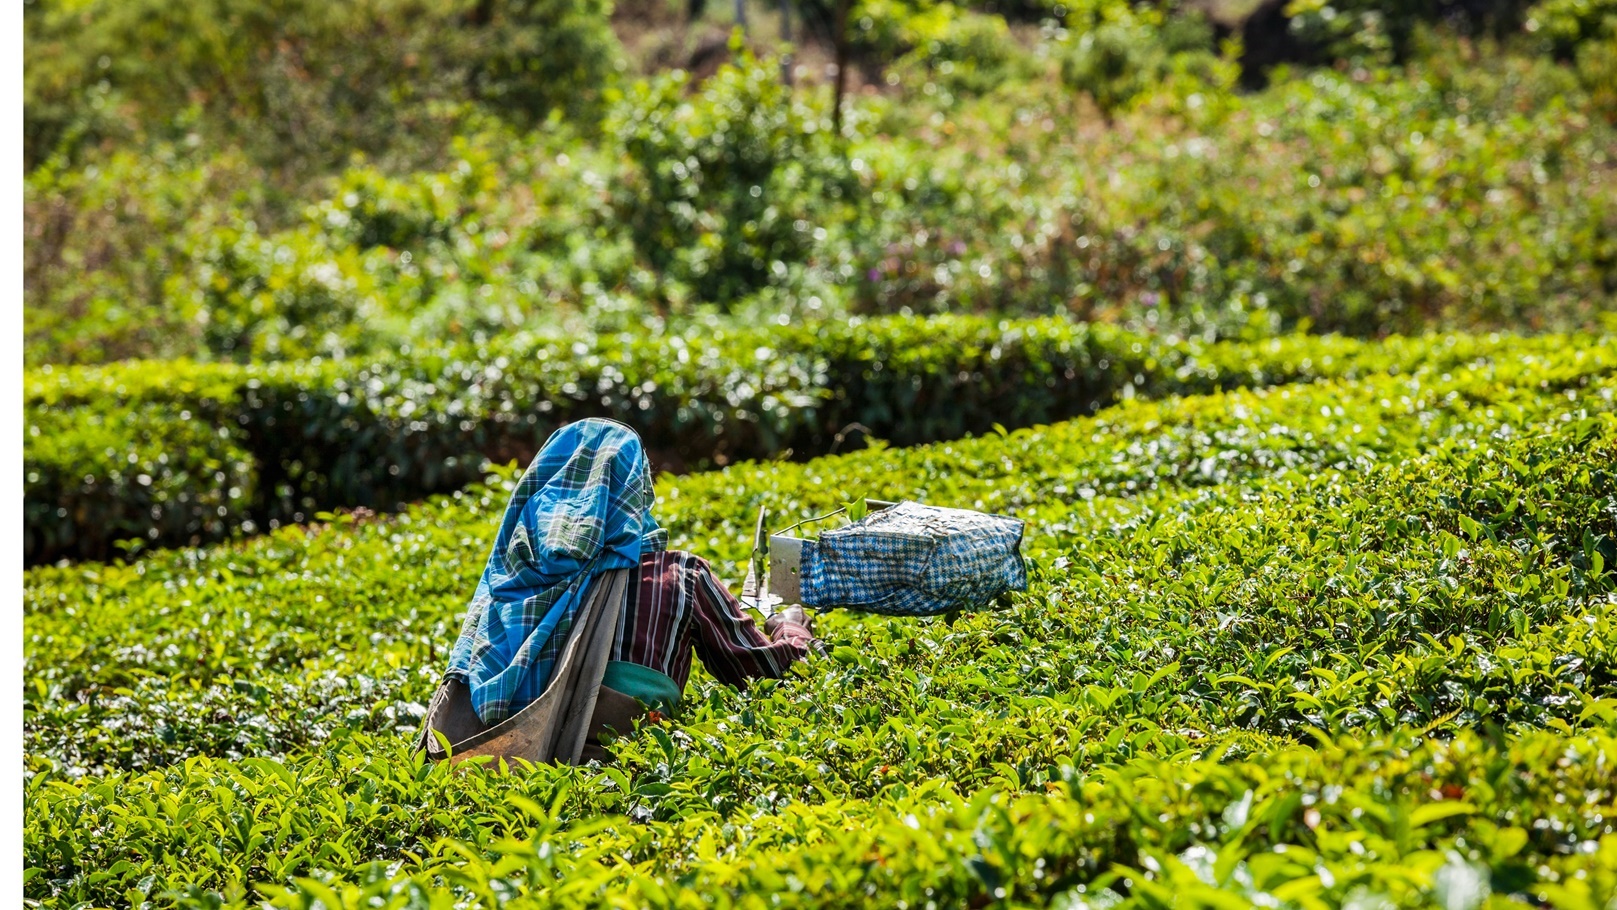 indian-woman-harvests-tea-leaves-at-tea-plantation-2021-08-26-22-58-59-utc